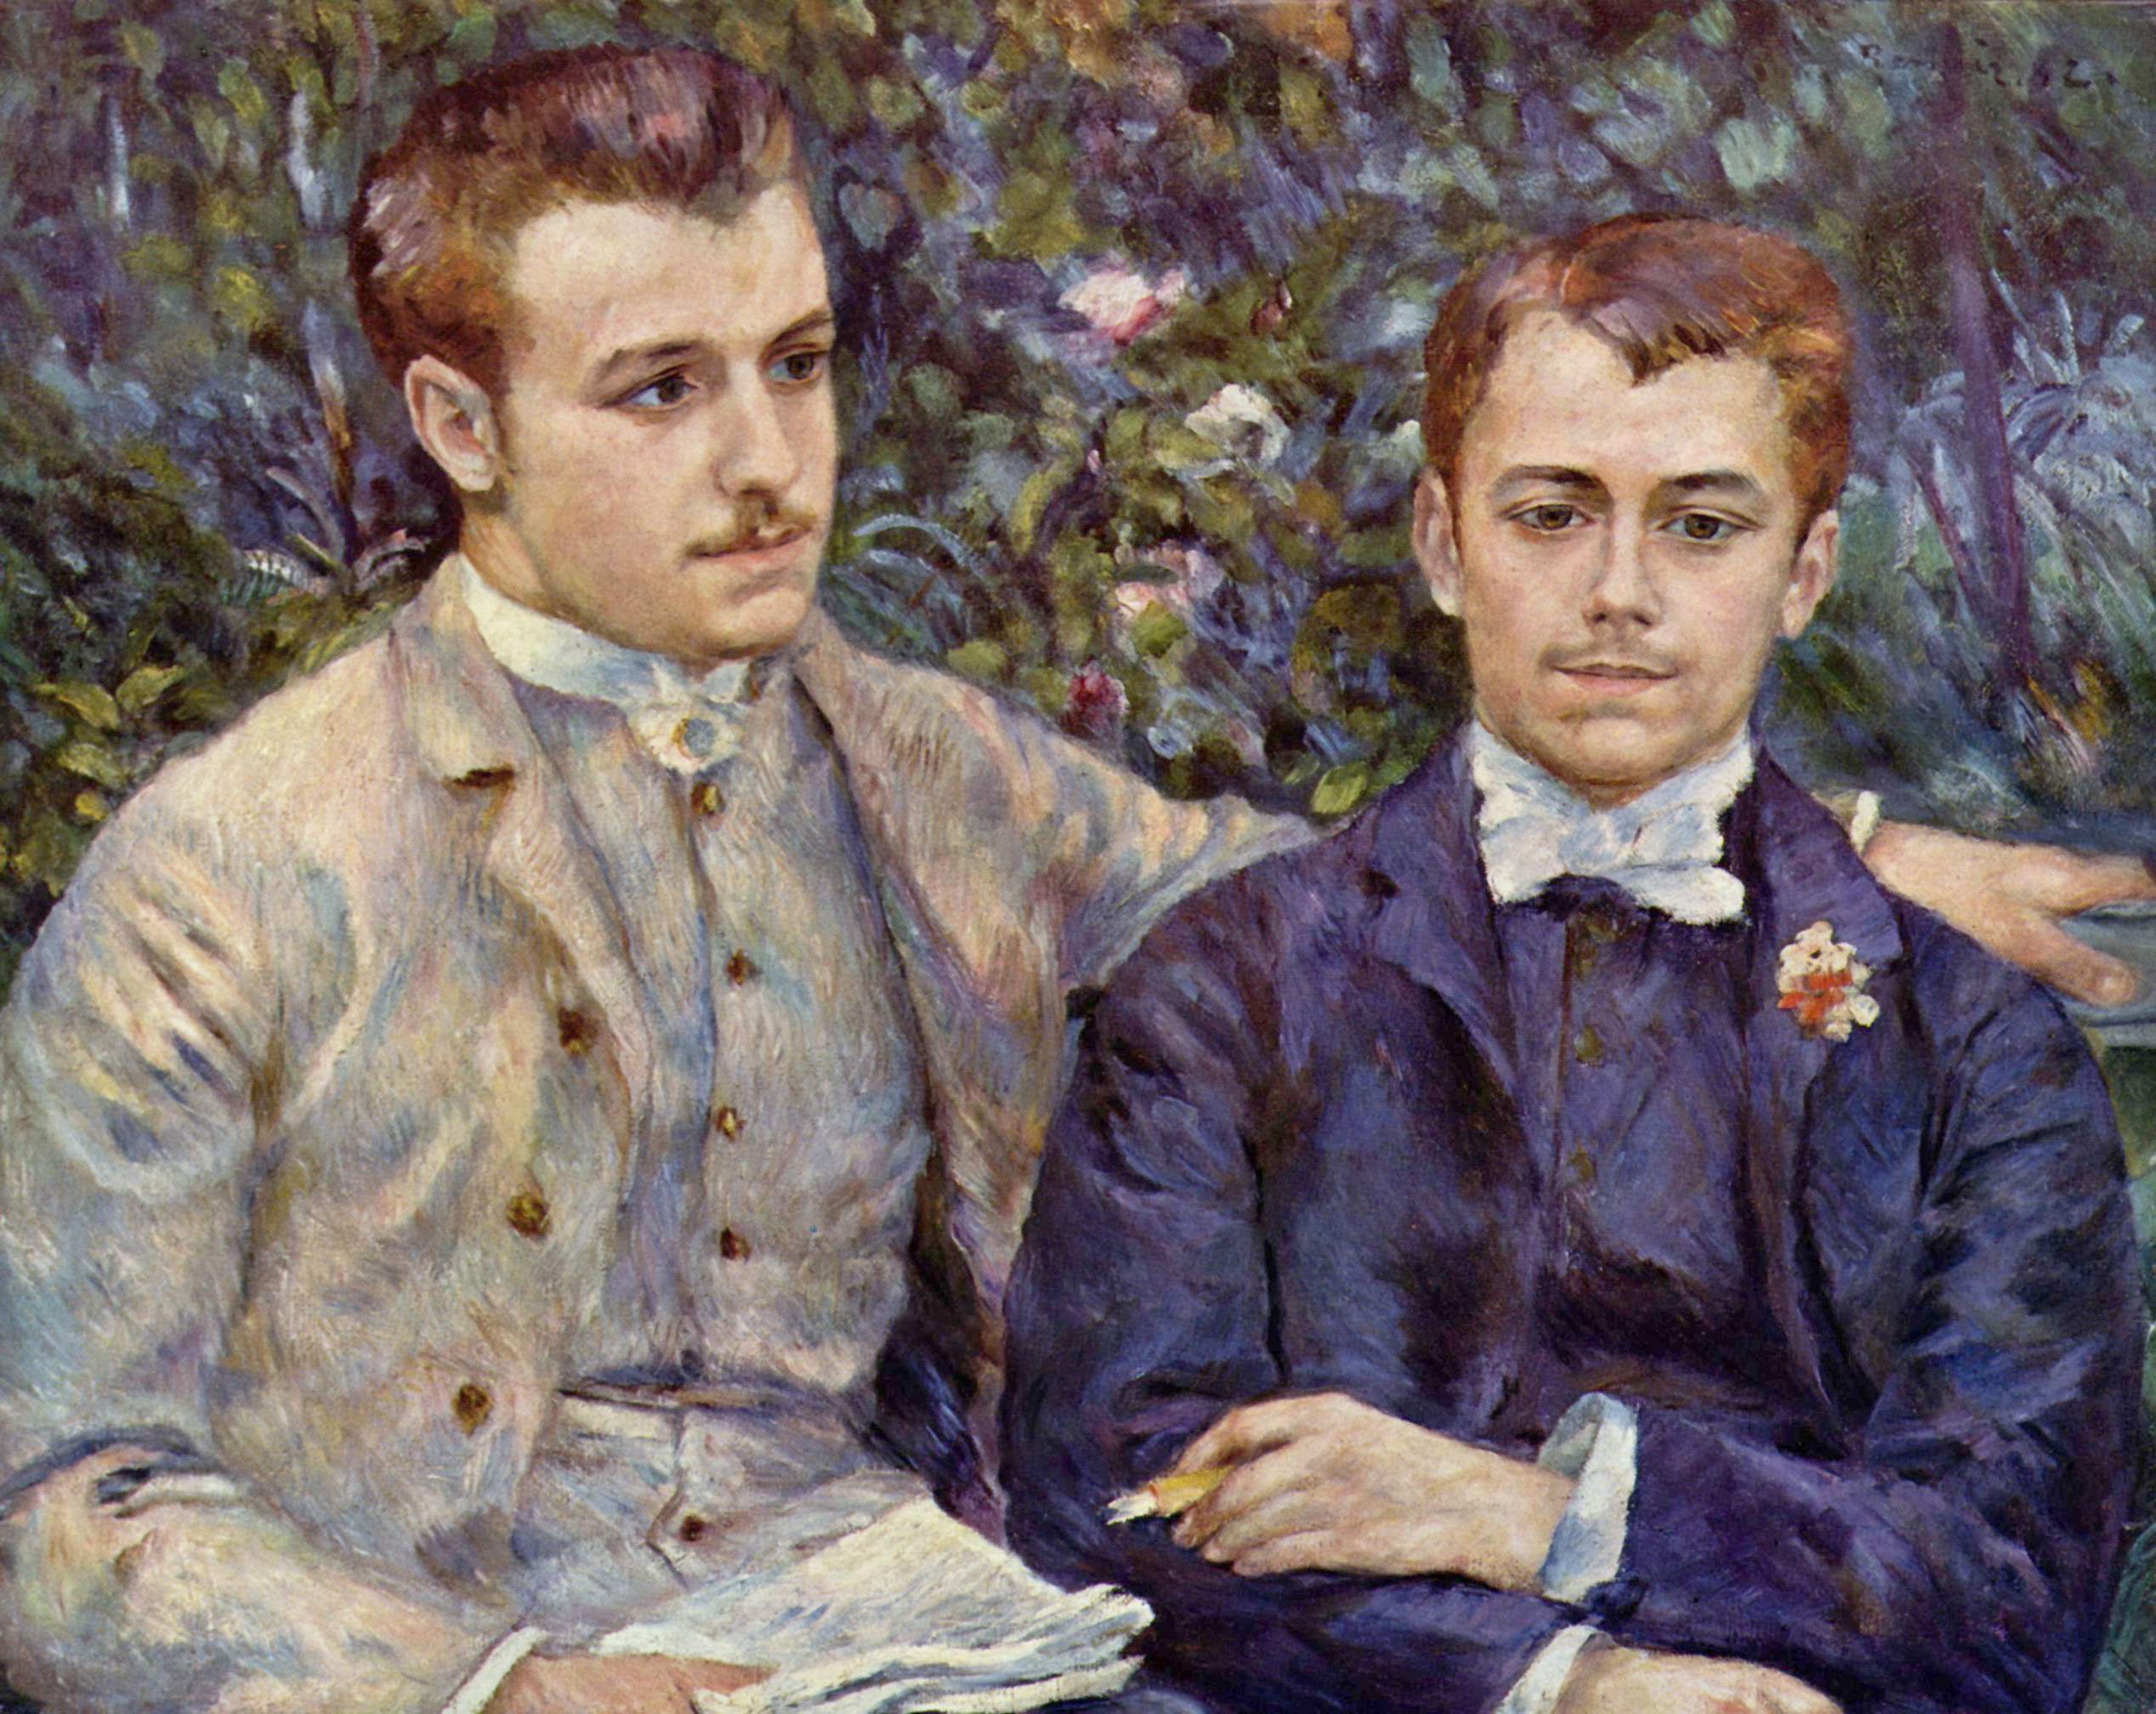 Retrato de Charles e Georges Durand Ruel by Pierre-Auguste Renoir - 1882 - 65 x 81 cm coleção privada